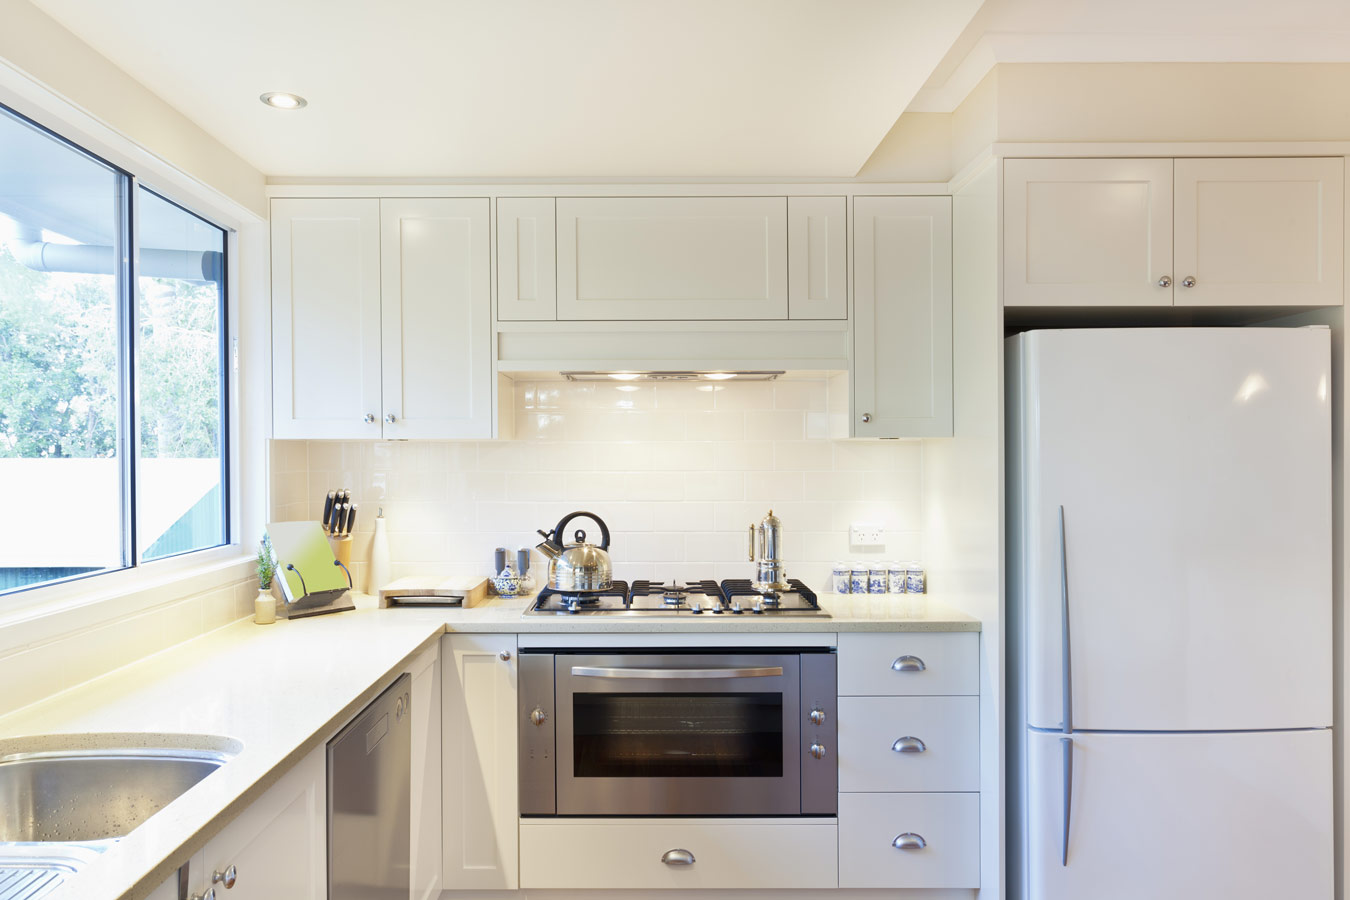 Moderne witte keuken met granieten werkblad - keukenkasten schilderen